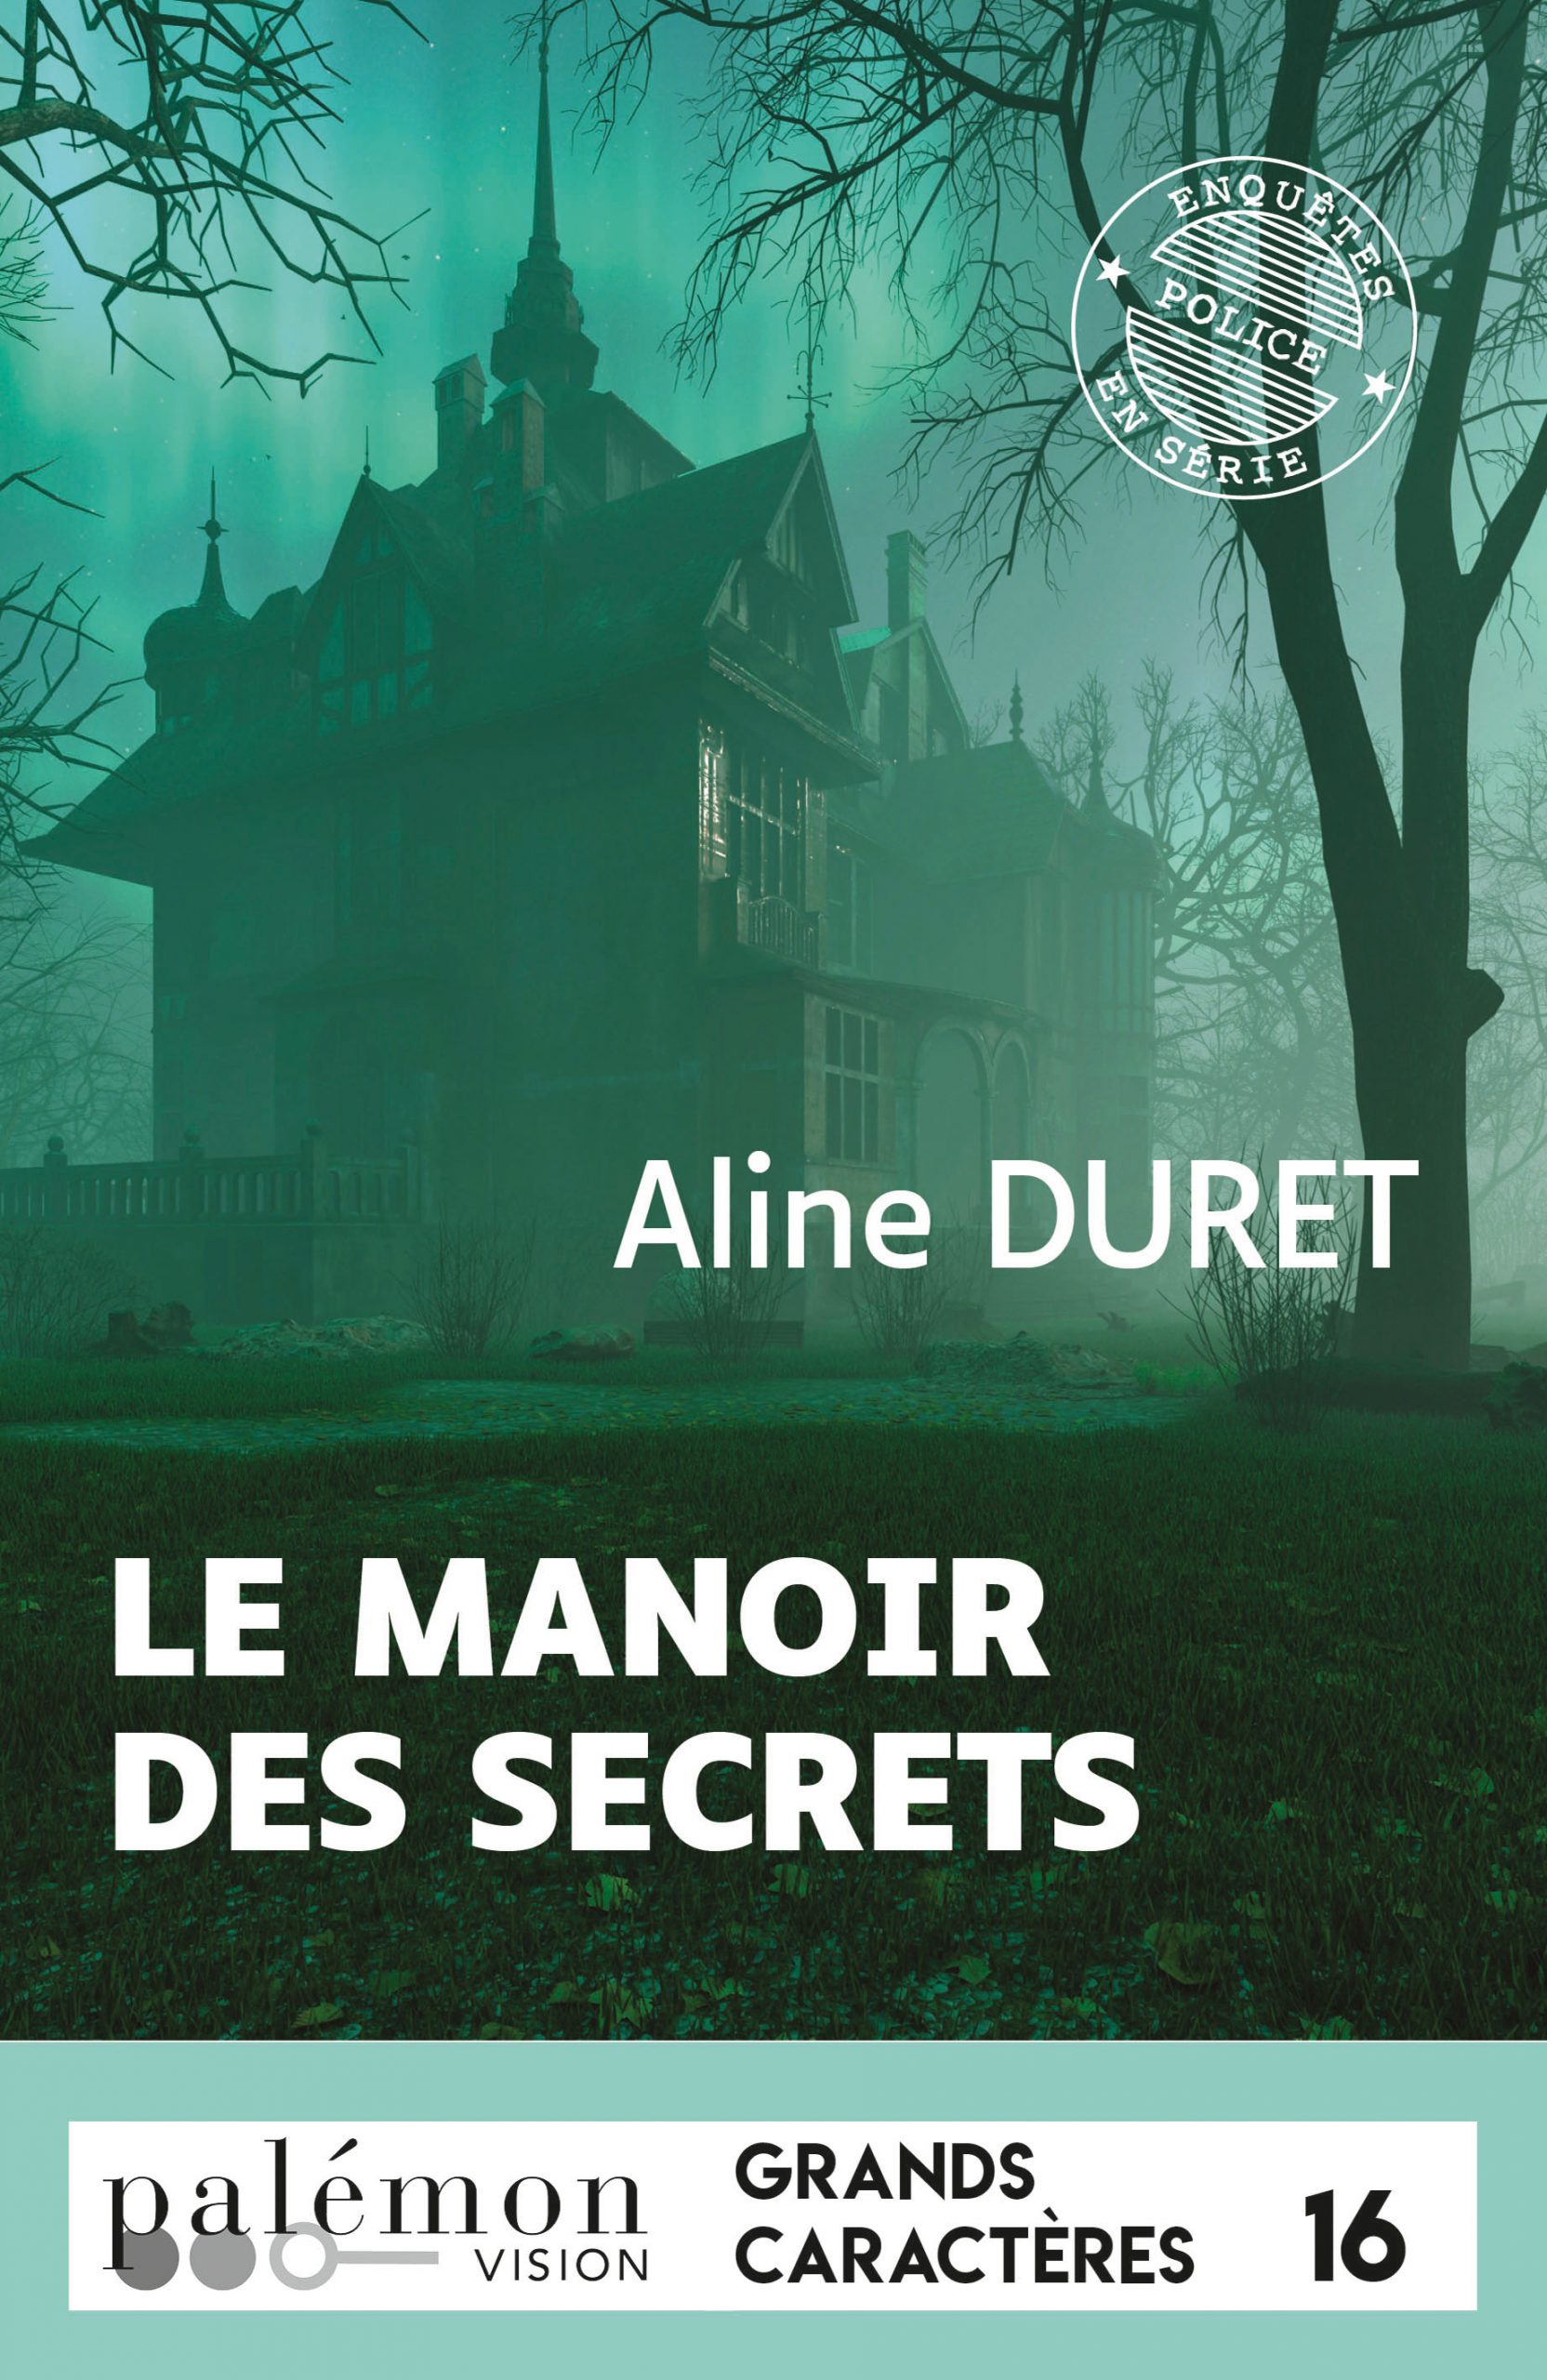 Couverture du livre en grands caractères Le manoir des secrets d'Aline Duret